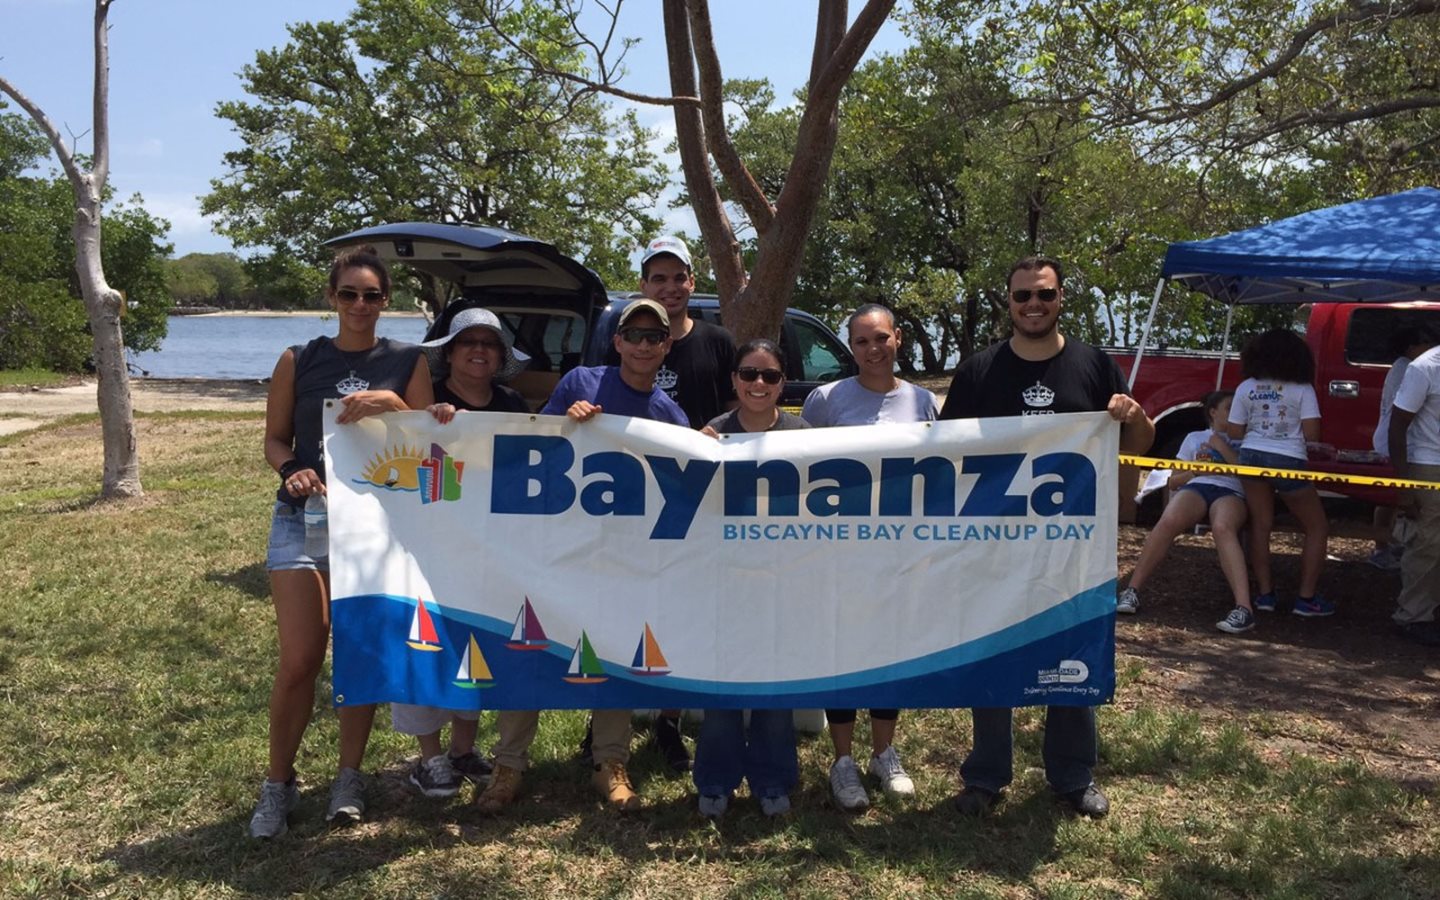 Gruppe vom Aufräumtag der Biscayne Bay mit Baynanza-Banner